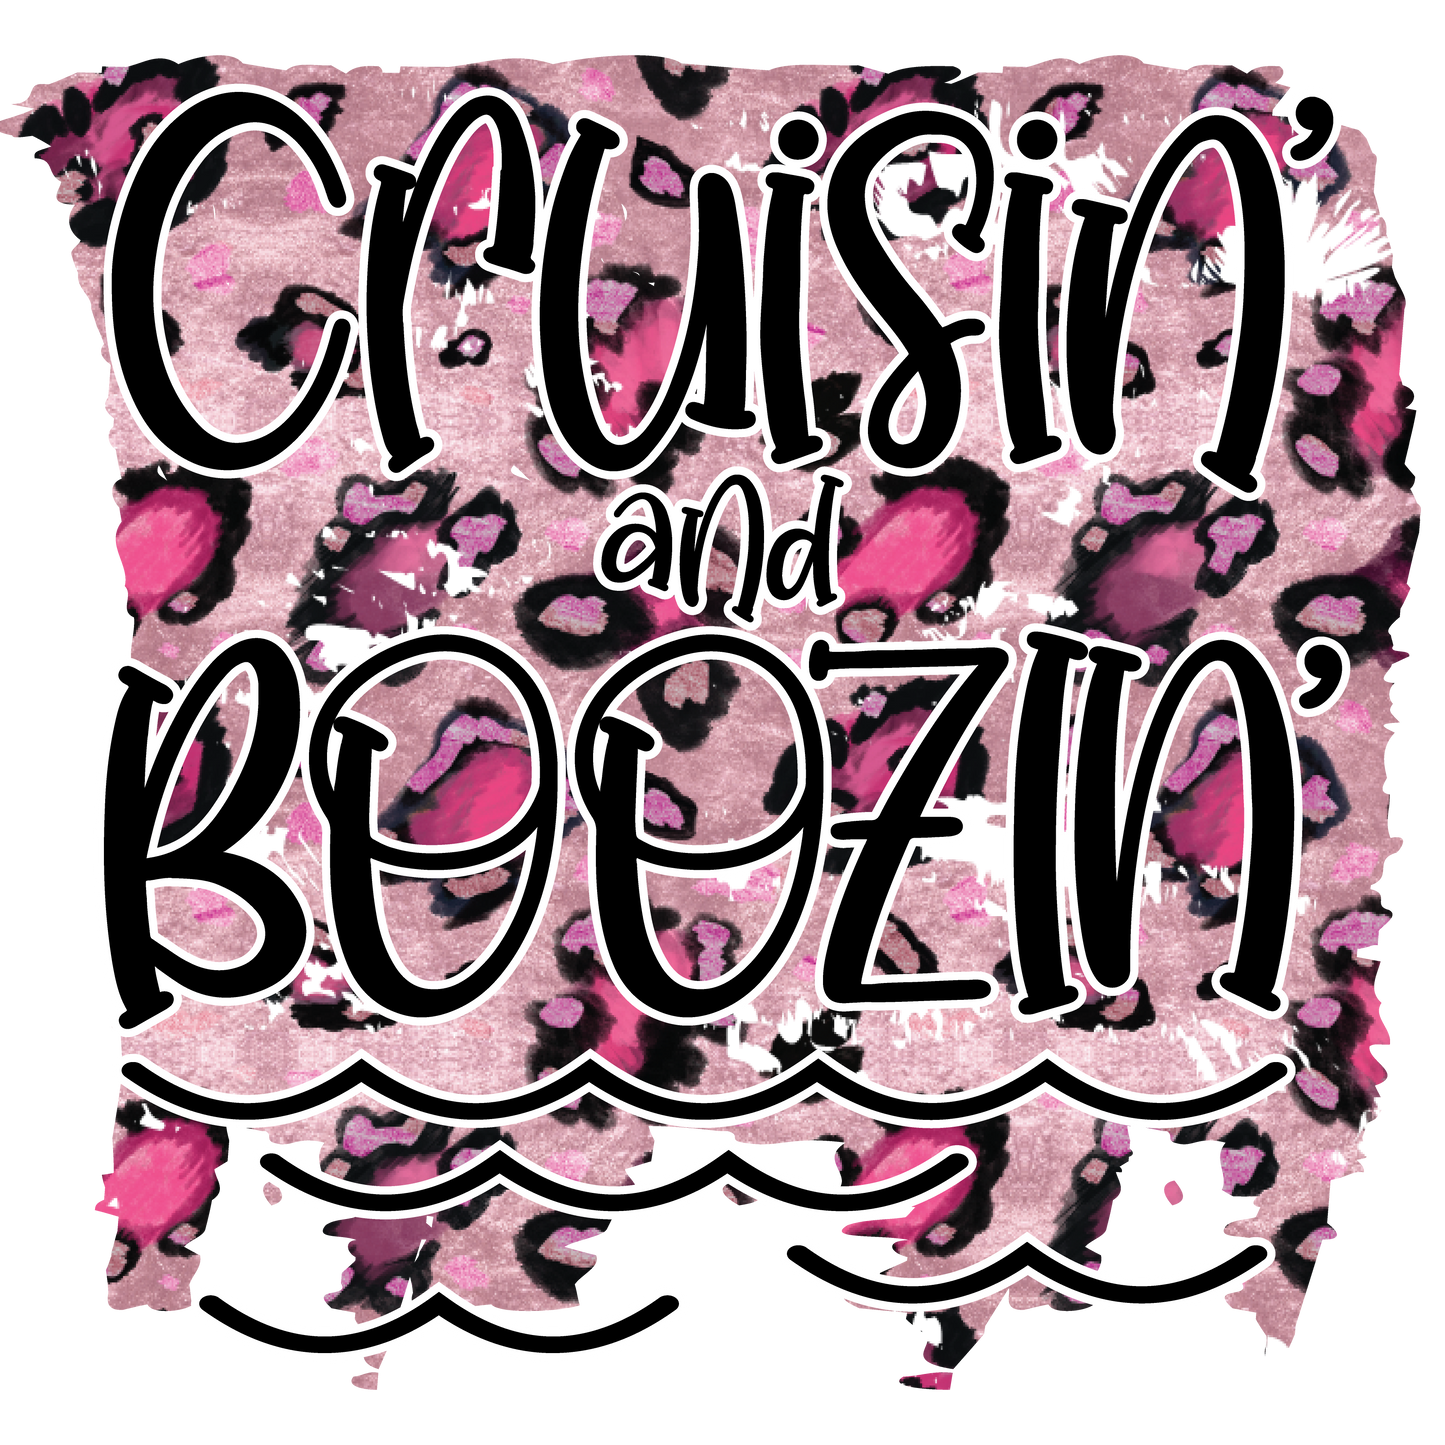 Cruisin and Boozin